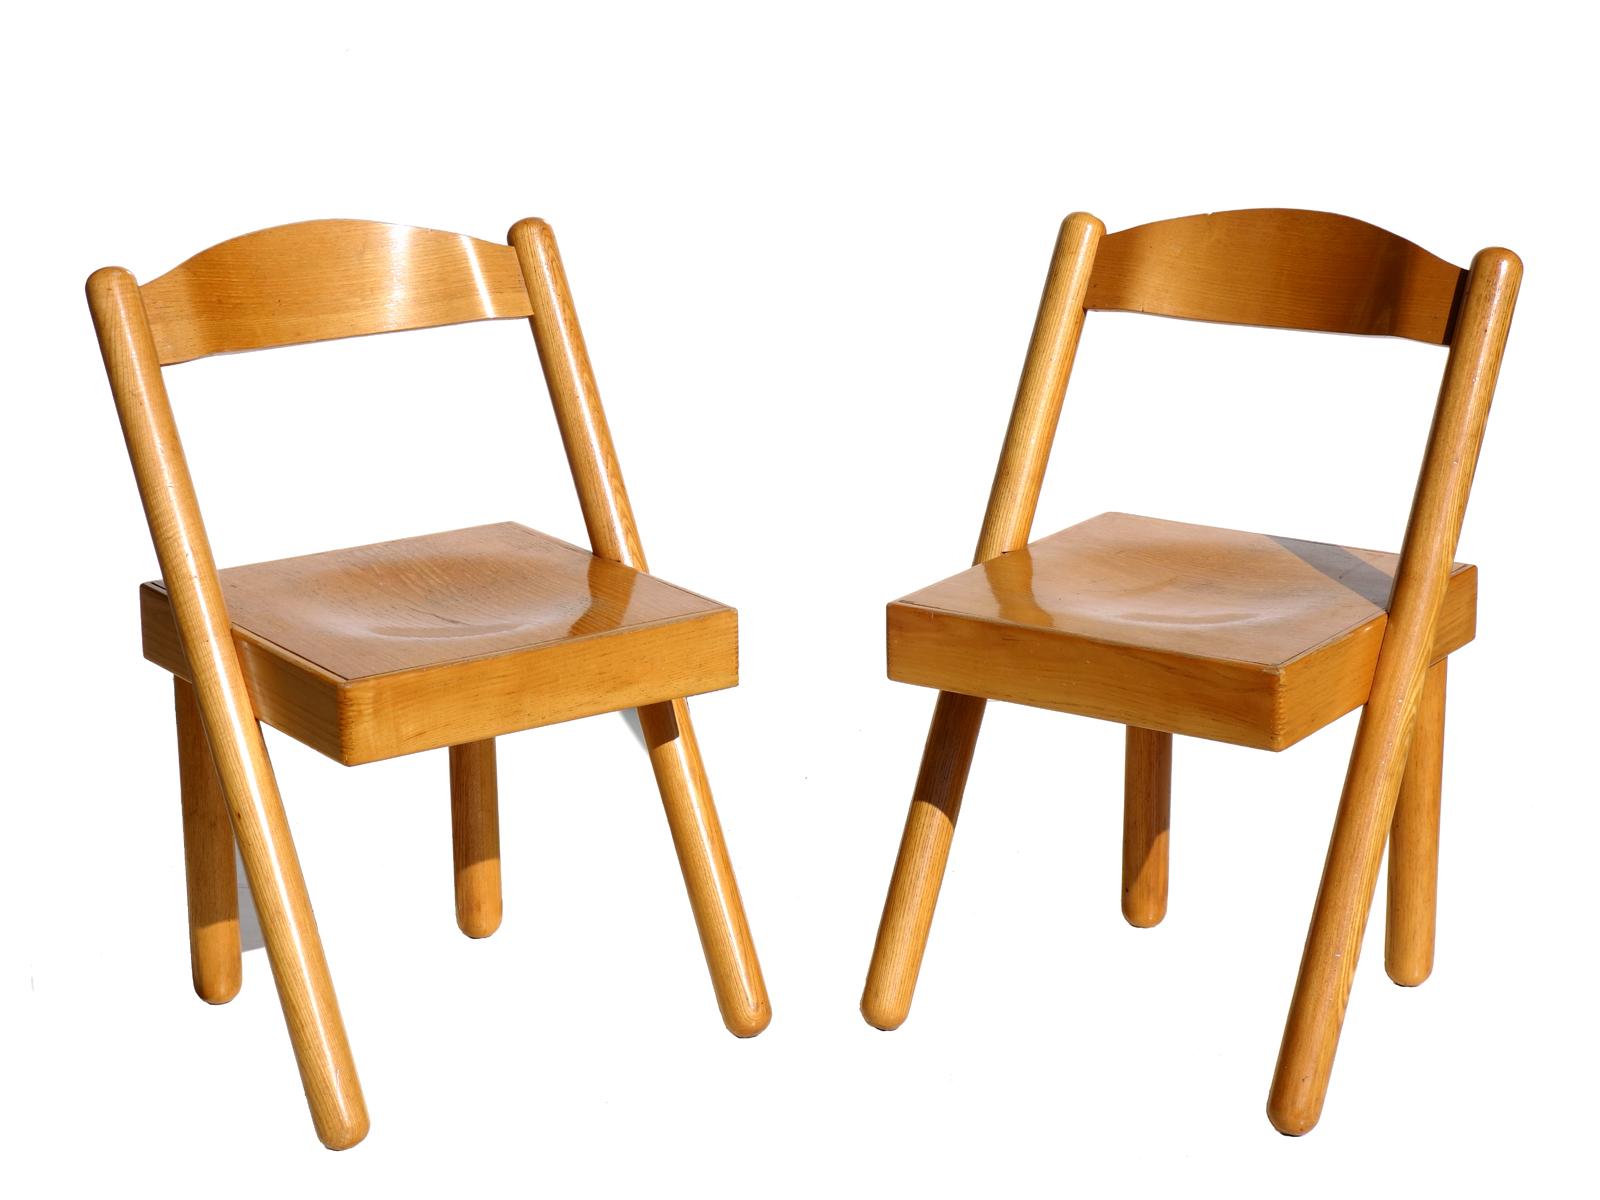 1972 von Stilwood.
Stühle aus Eschenholz.
Seltenes Modell.
Sehr guter Zustand.